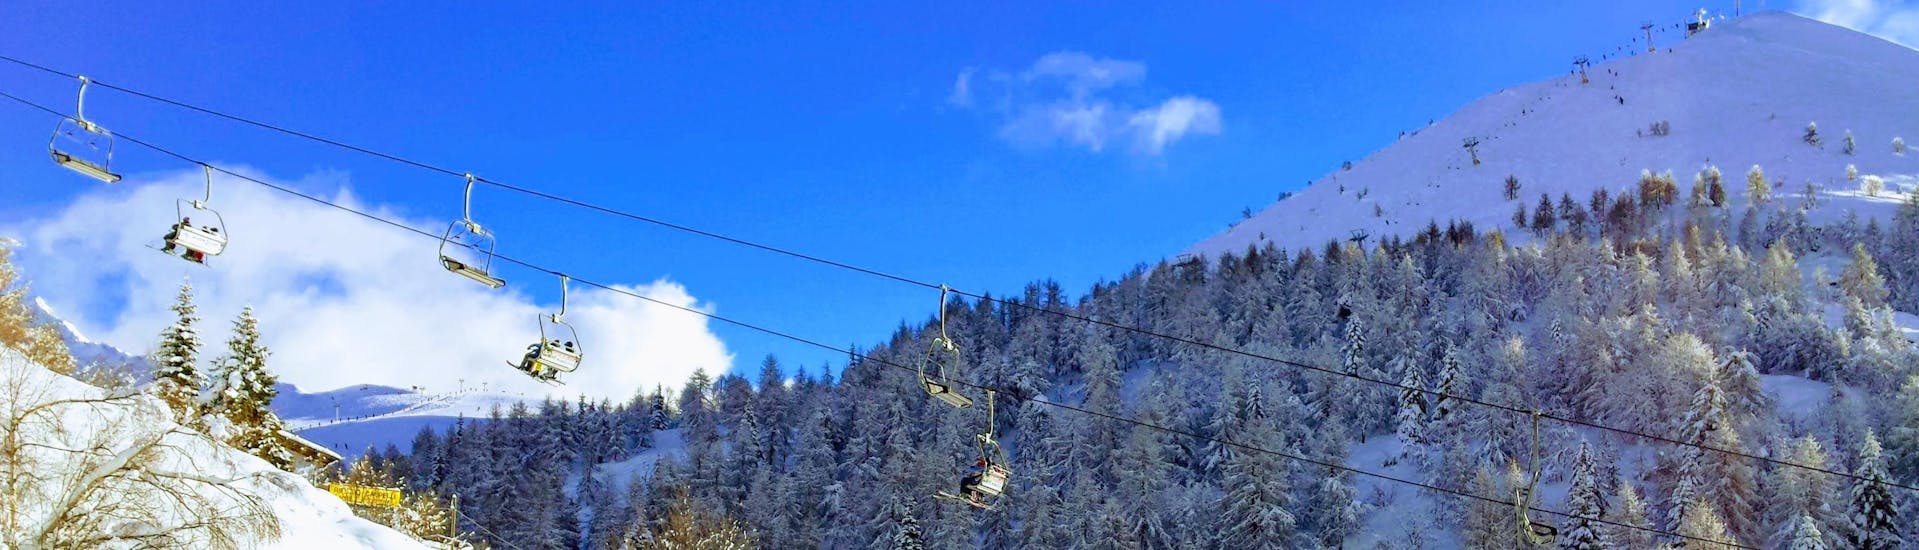 Ski lift going up the slopes in ski resort Piani di Bobbio, Italy.